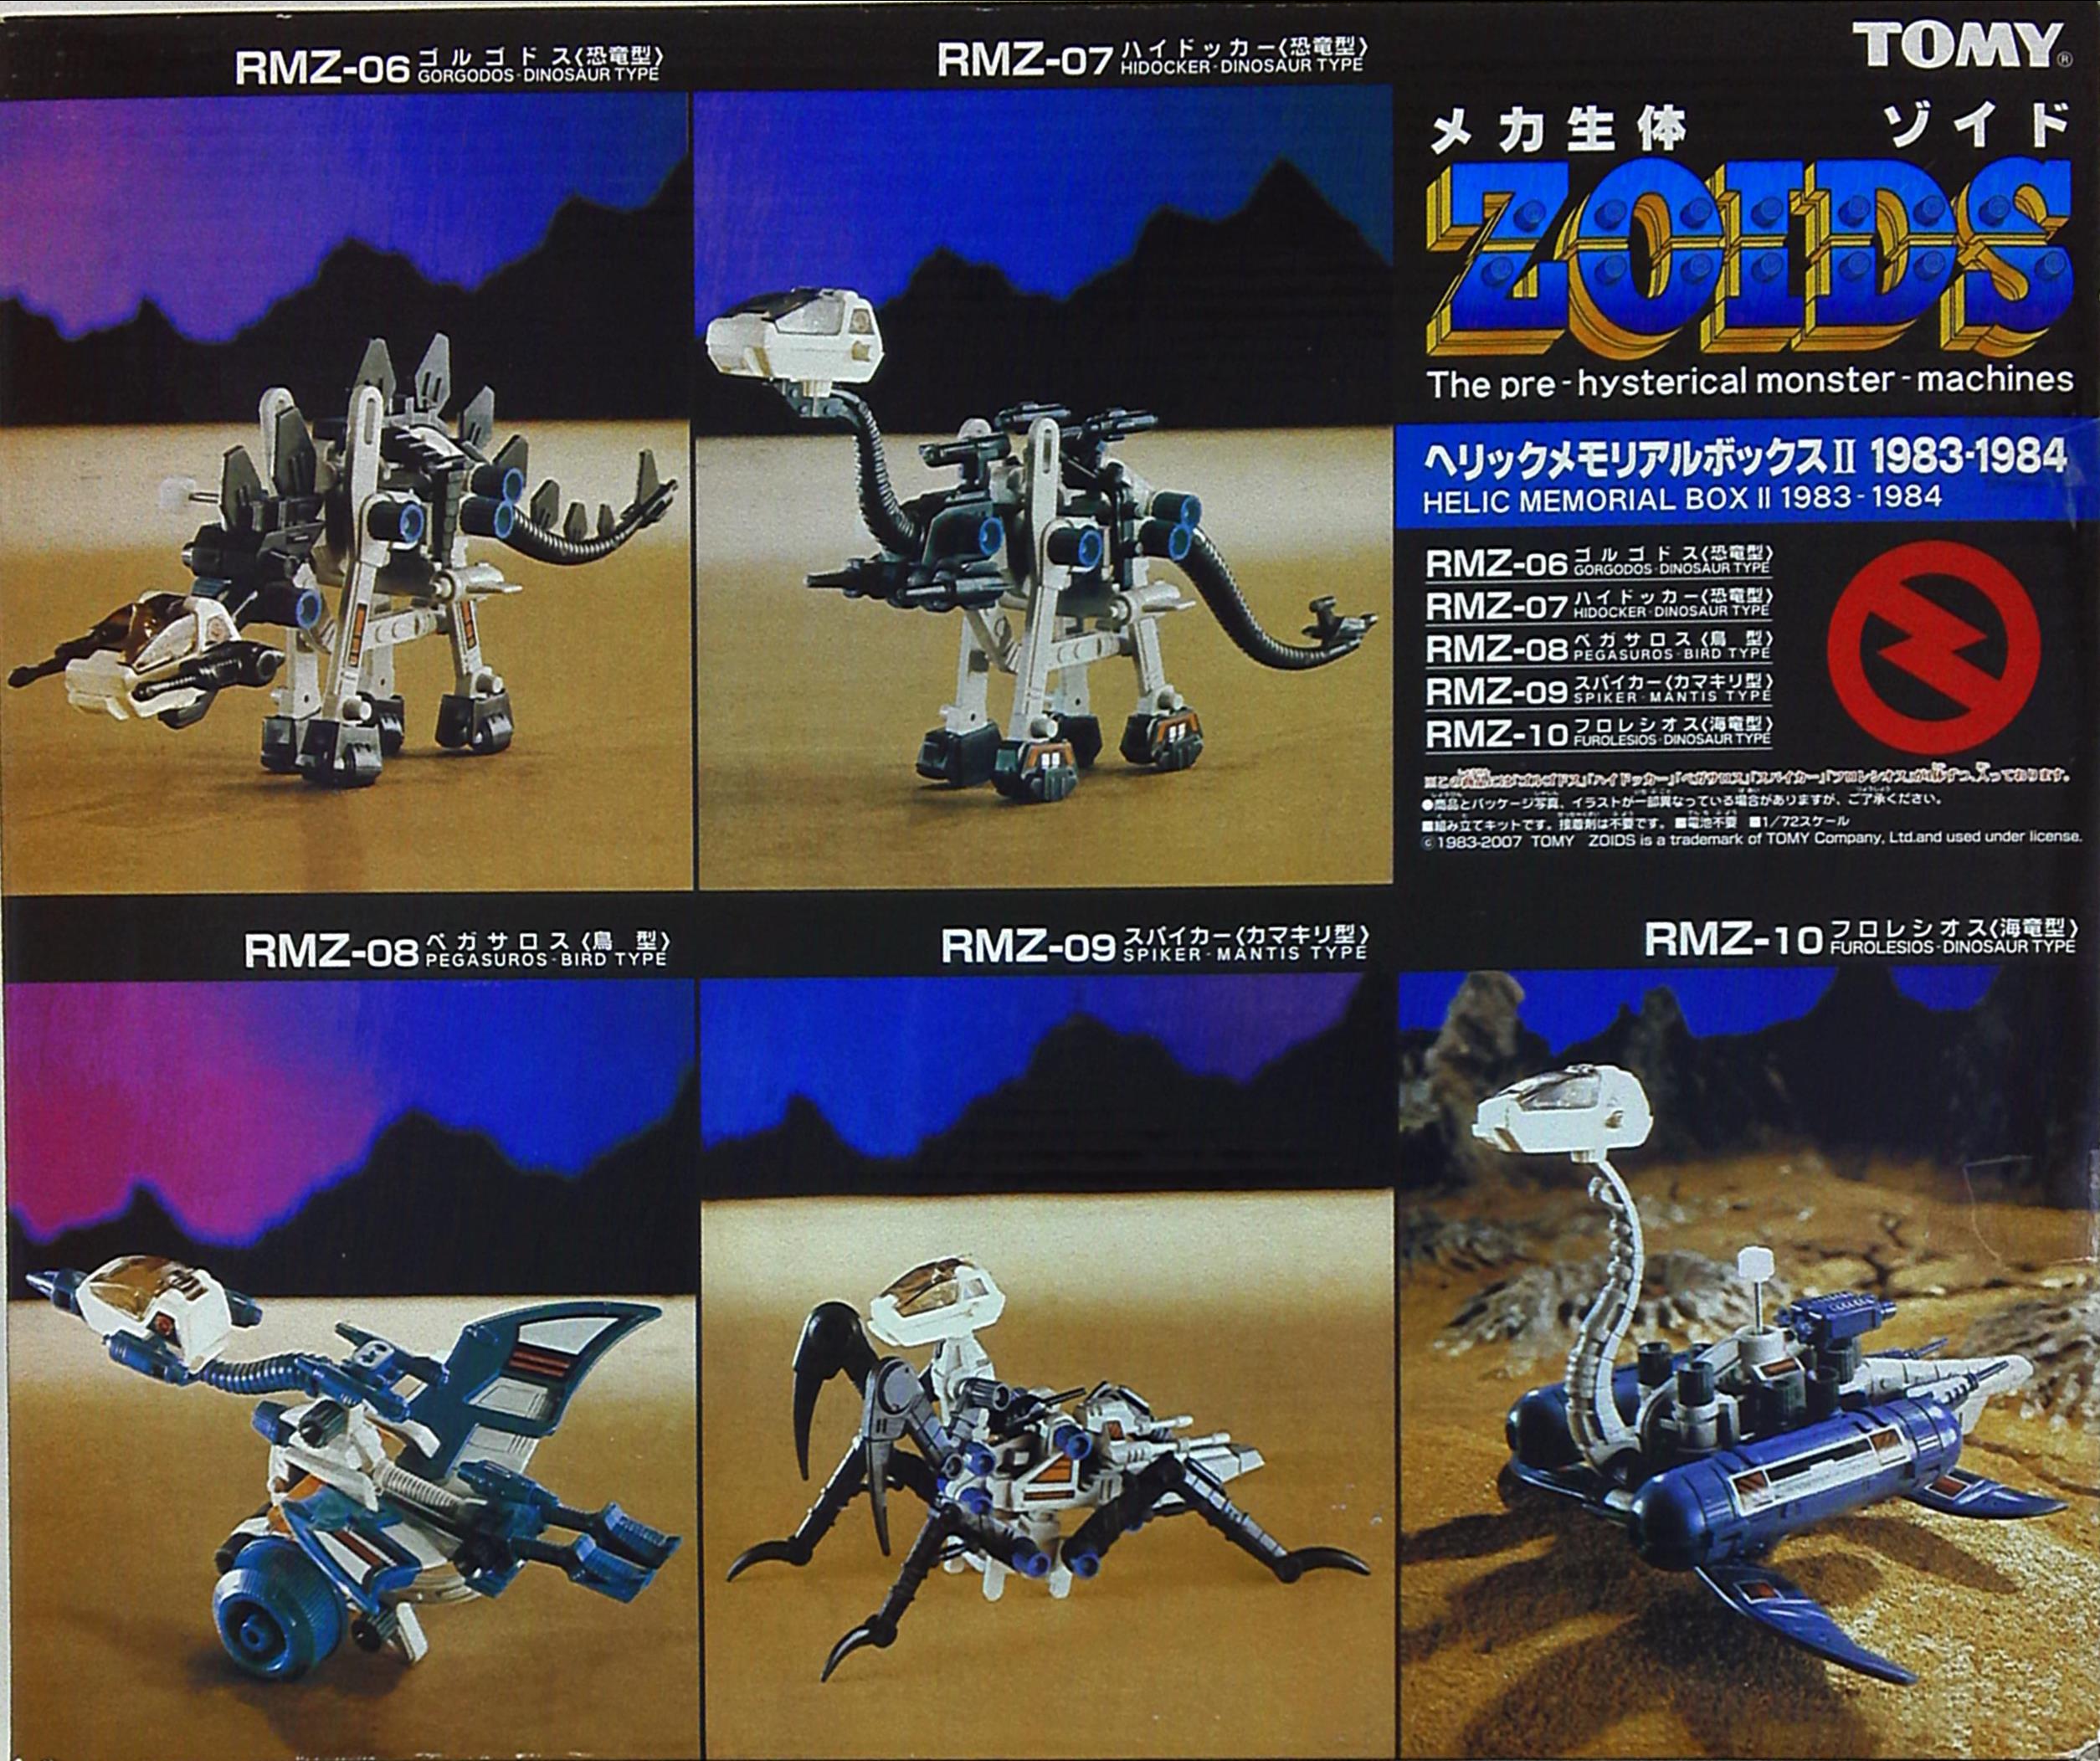 ZOIDS/メカ生体ゾイド　ヘリックメモリアルボックス　1983